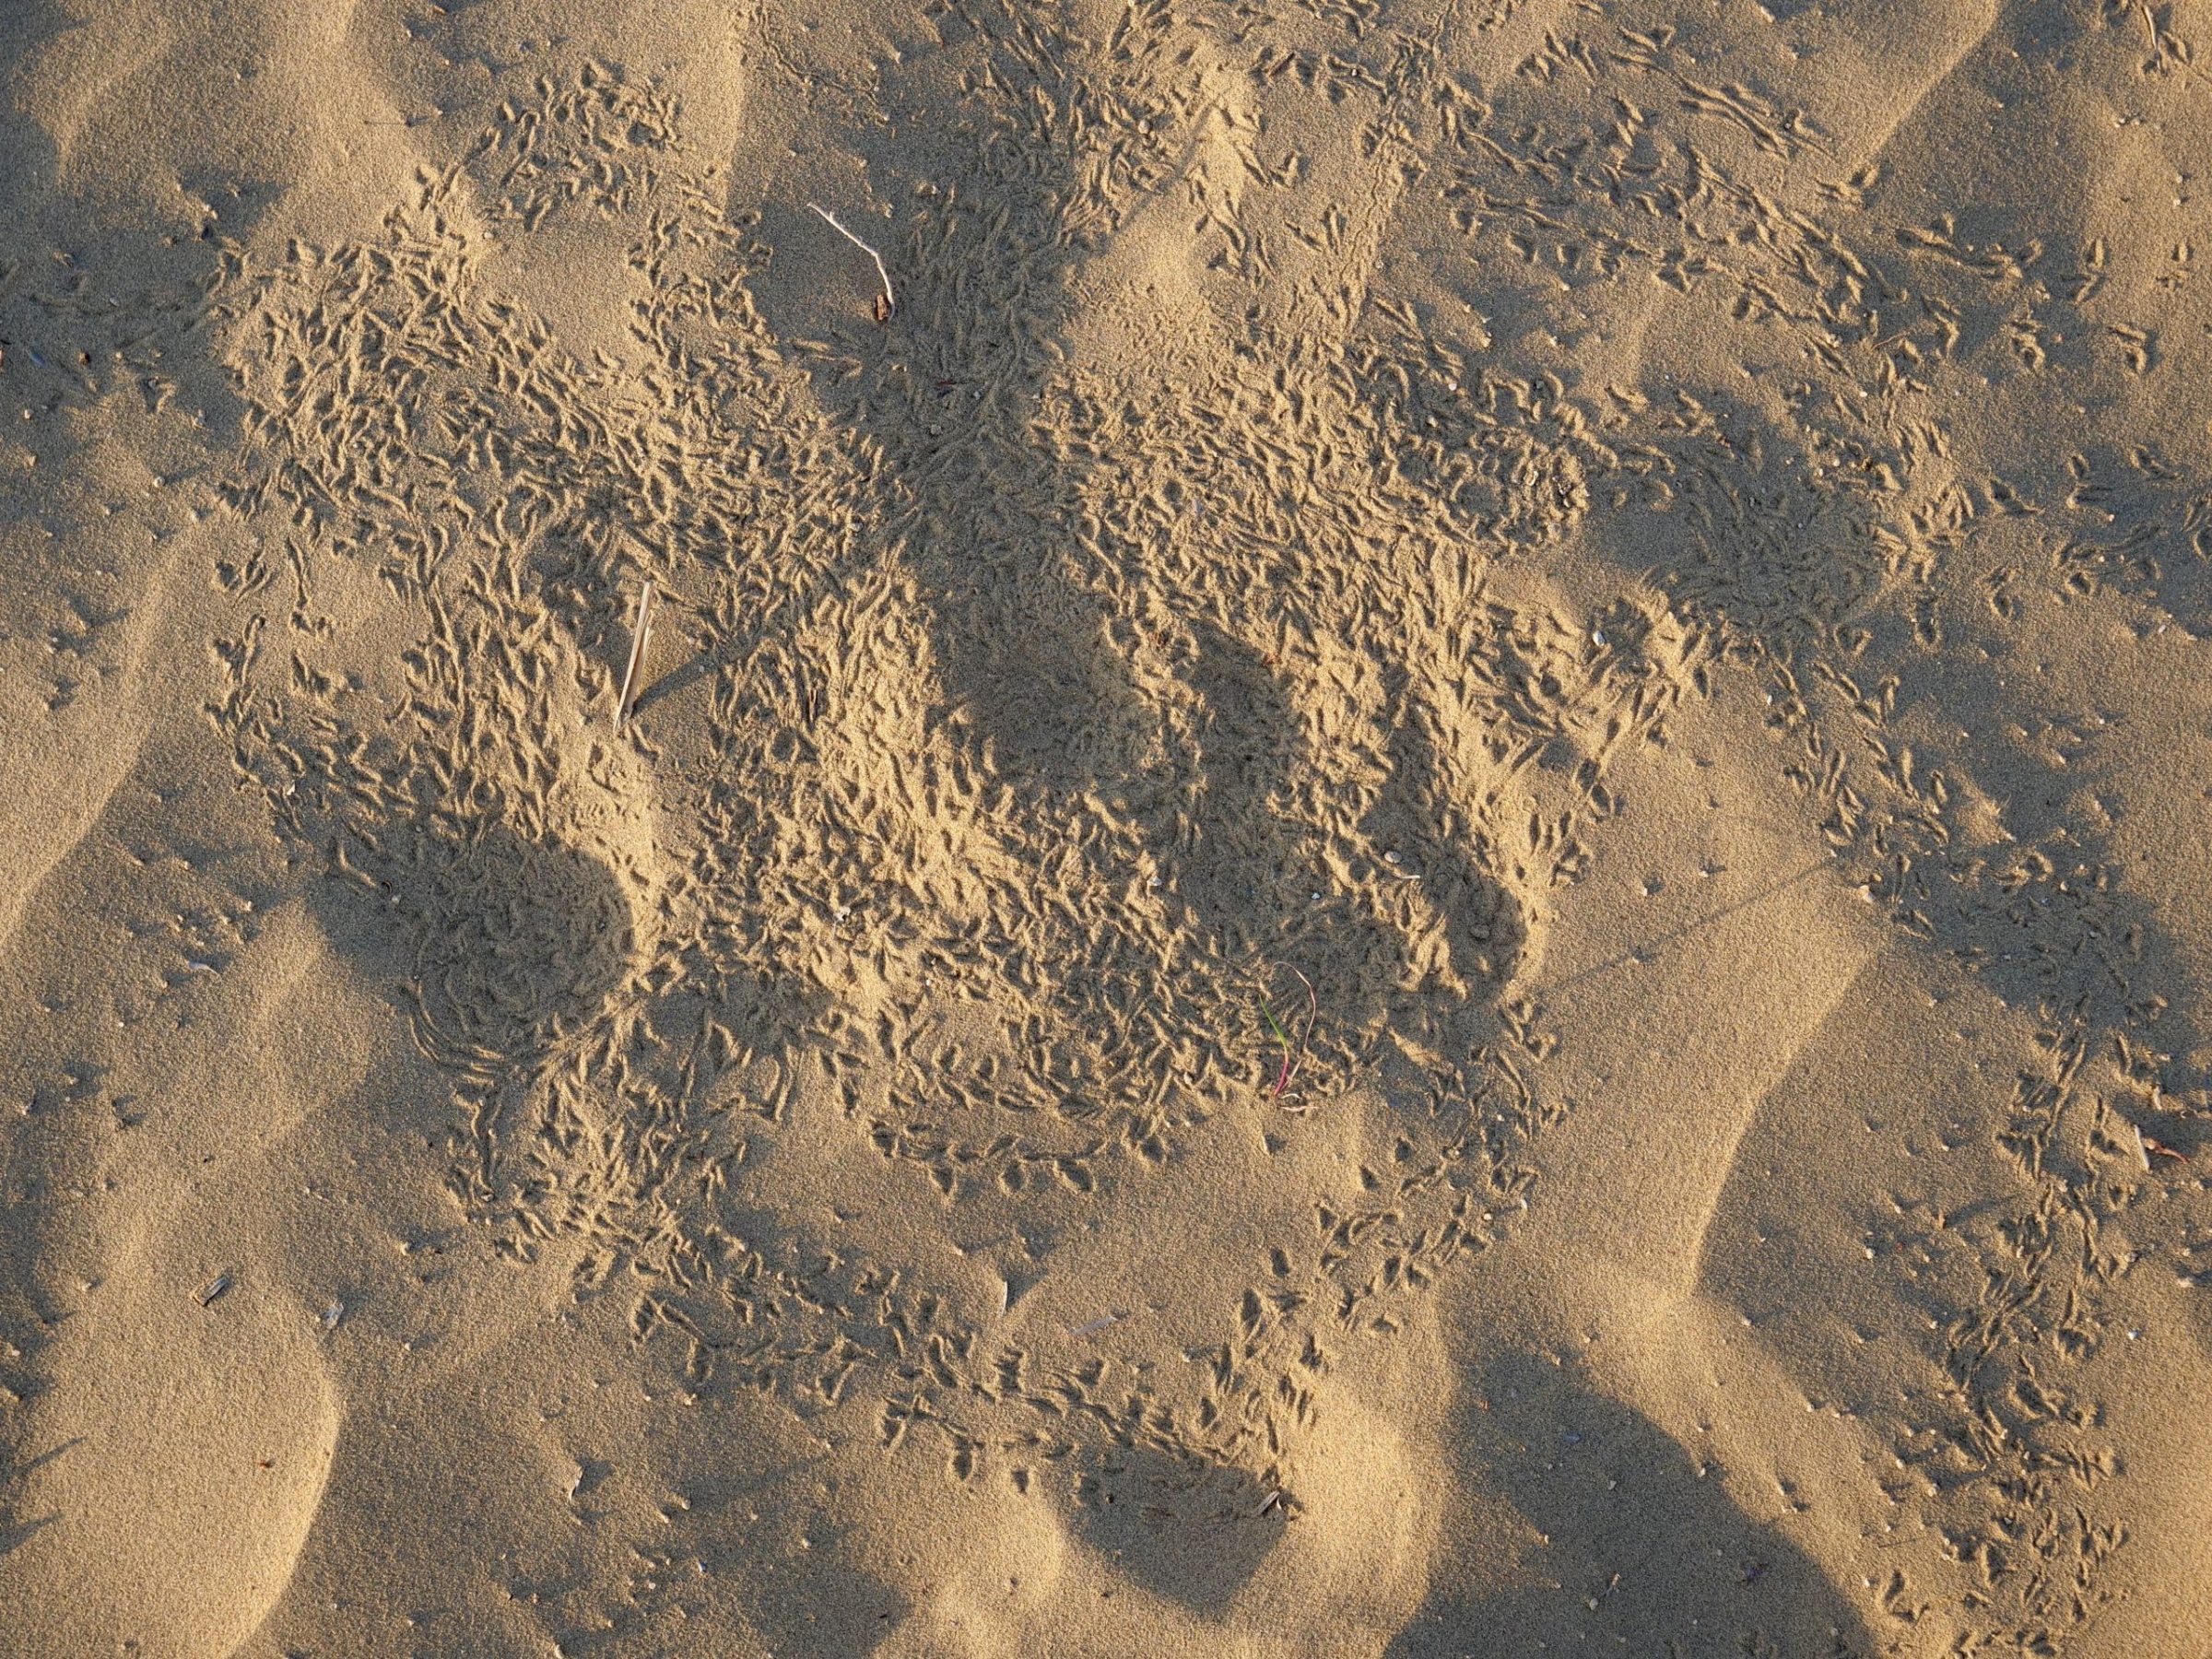 Birdprints, Thar Desert